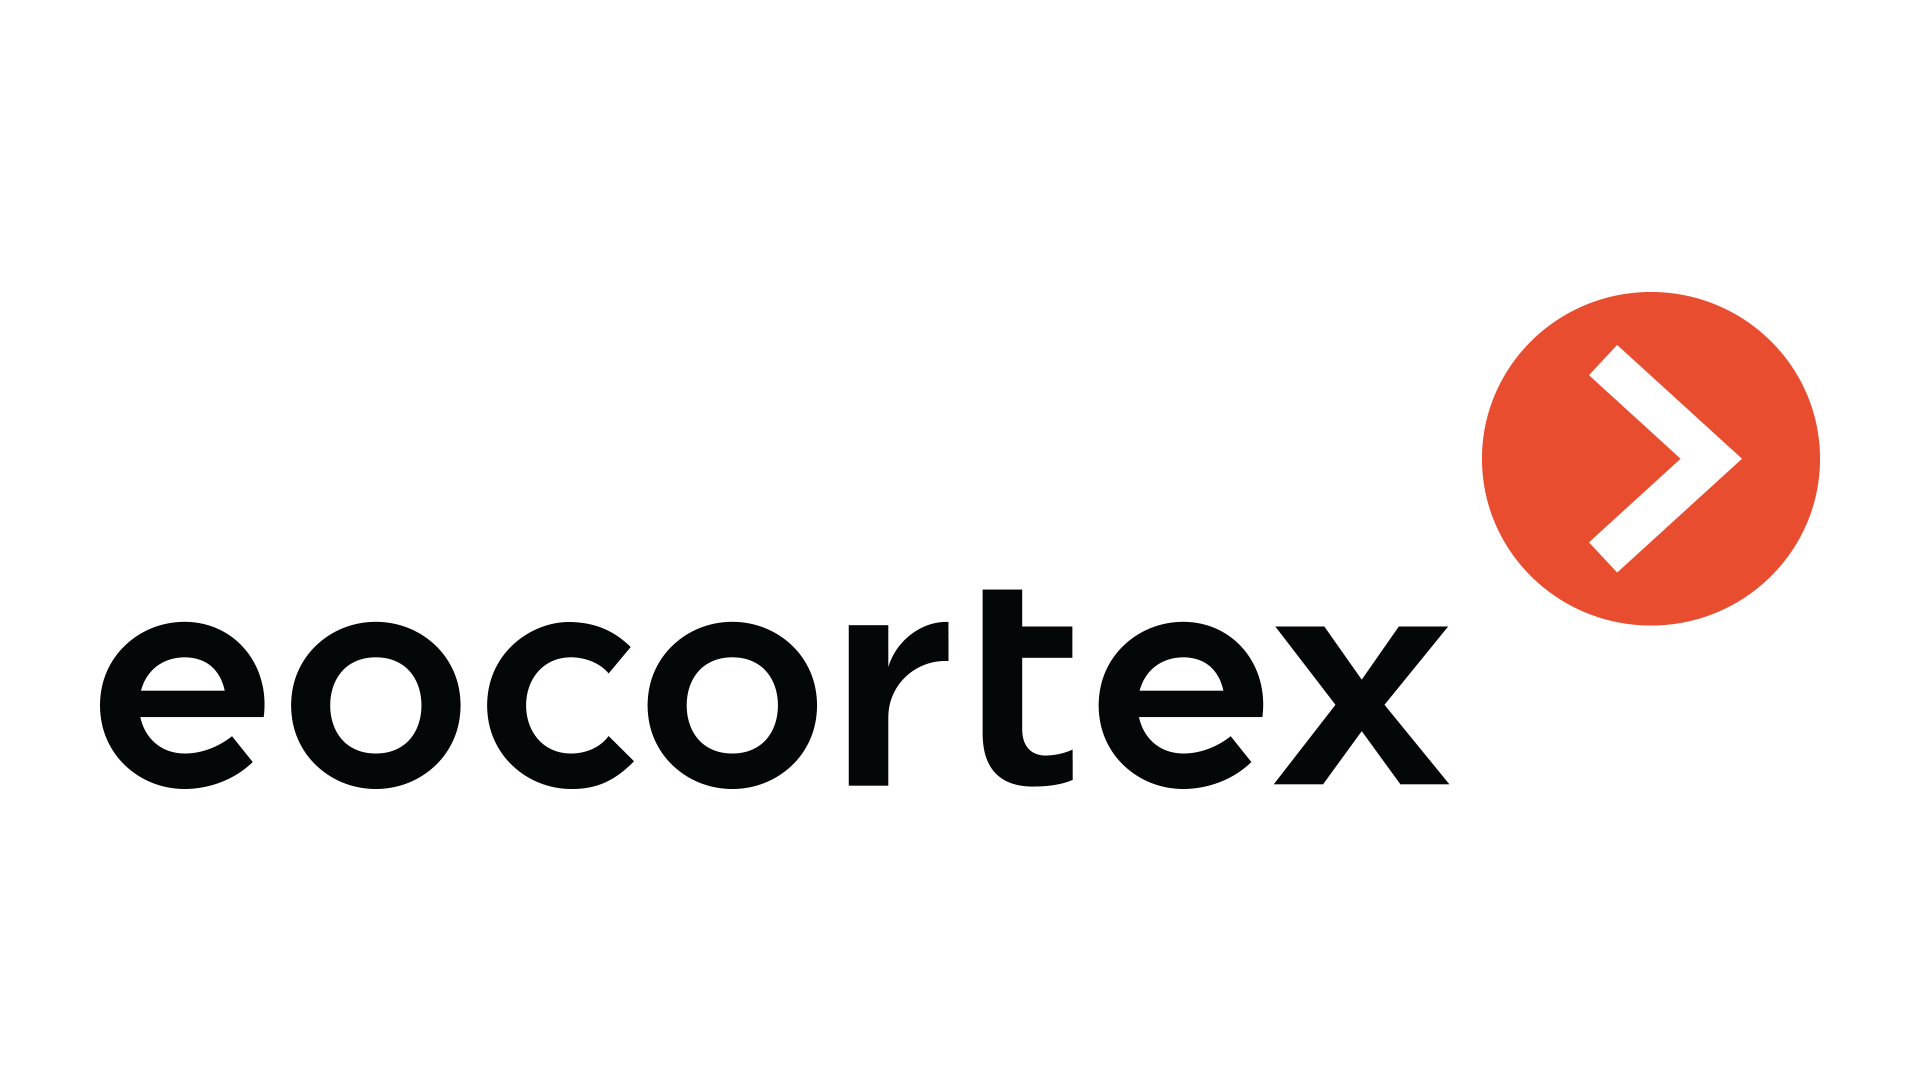 Eocortex